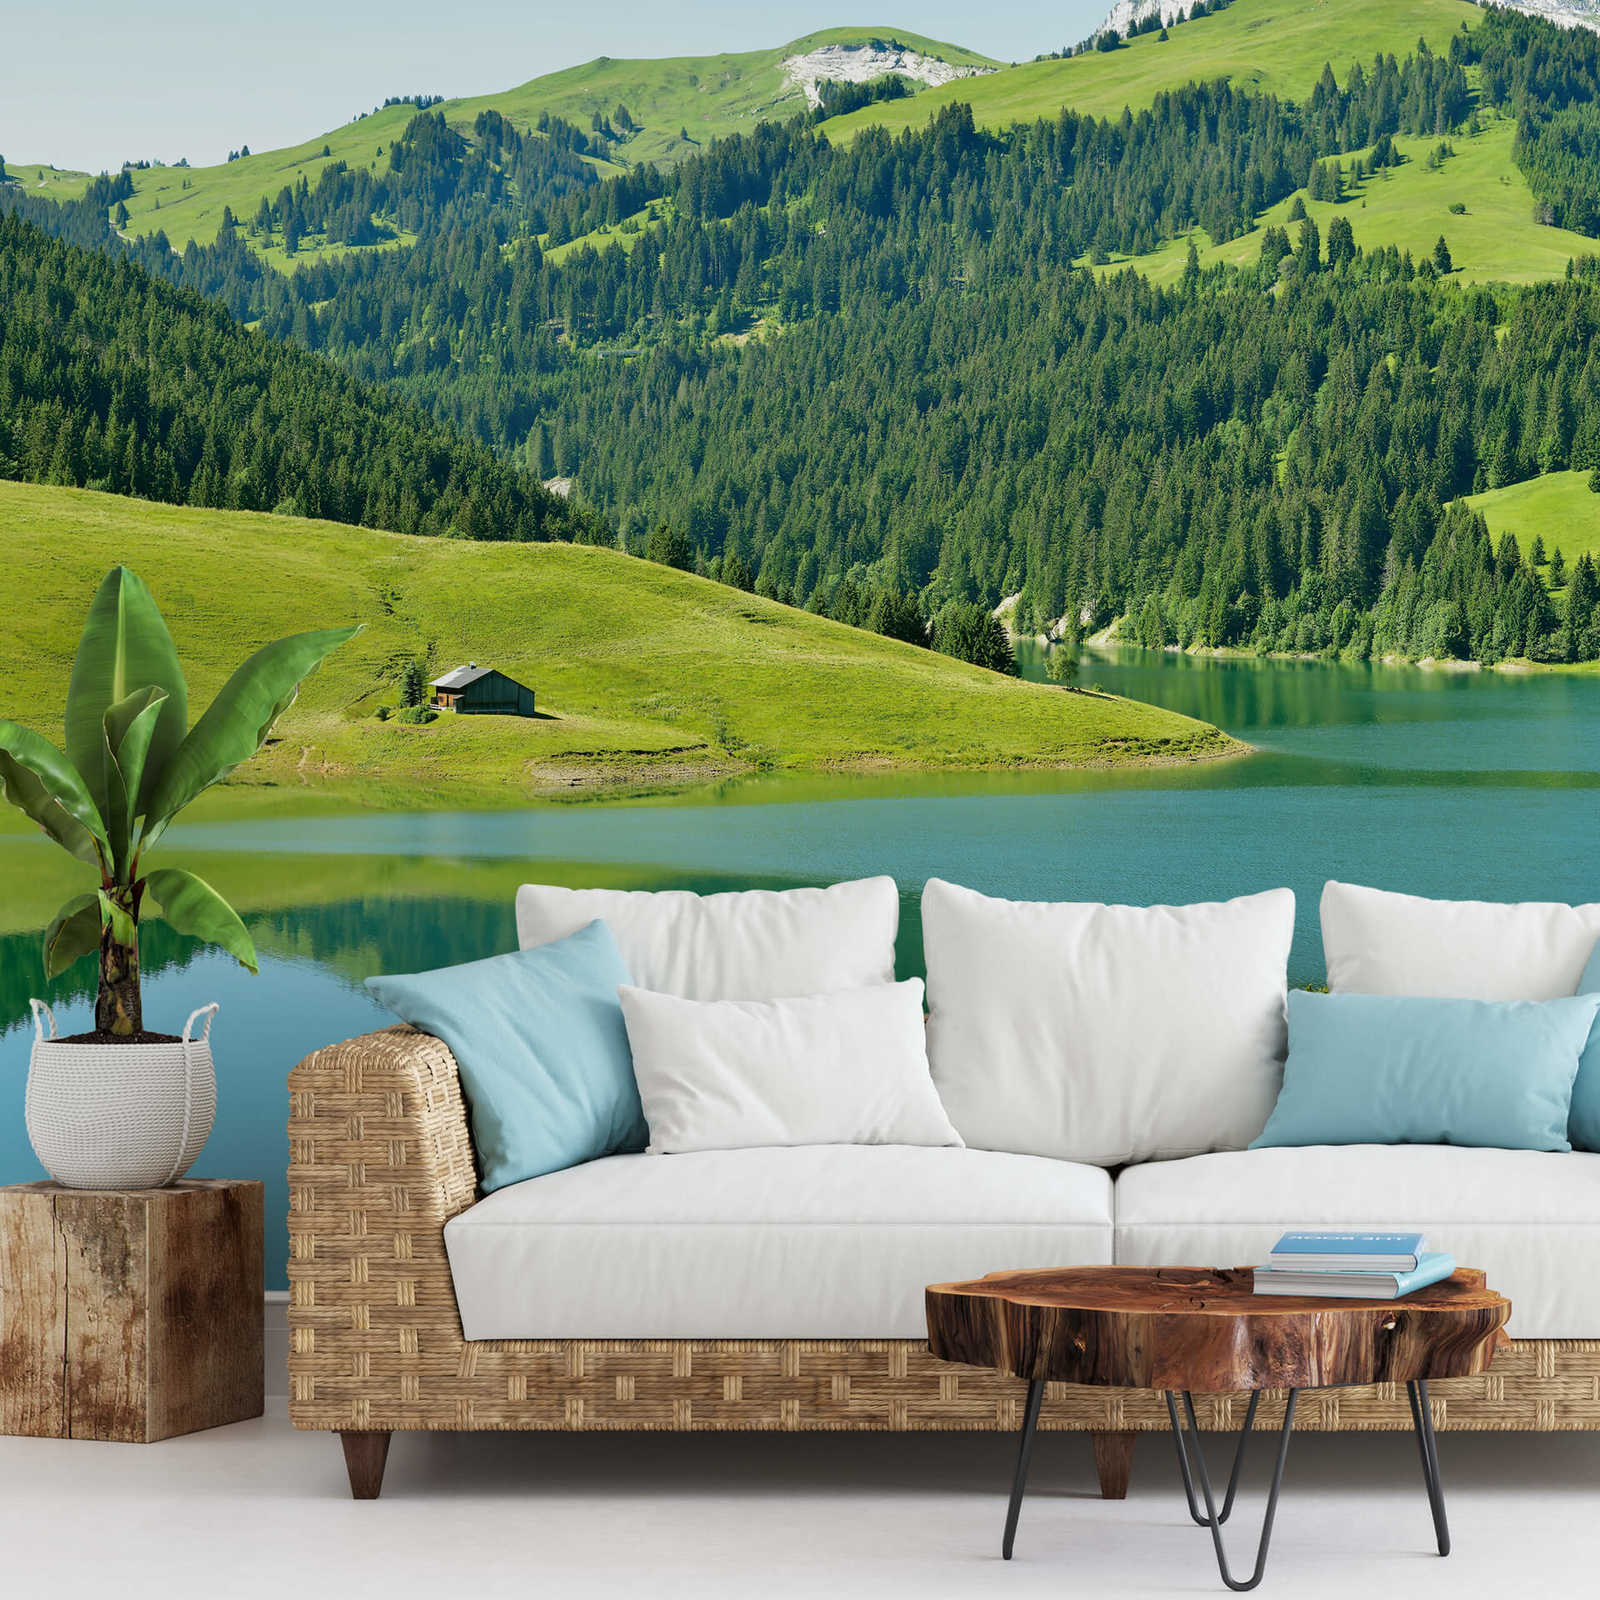             Muurschildering Berg met meer in Zwitserland - Groen, Blauw, Grijs
        